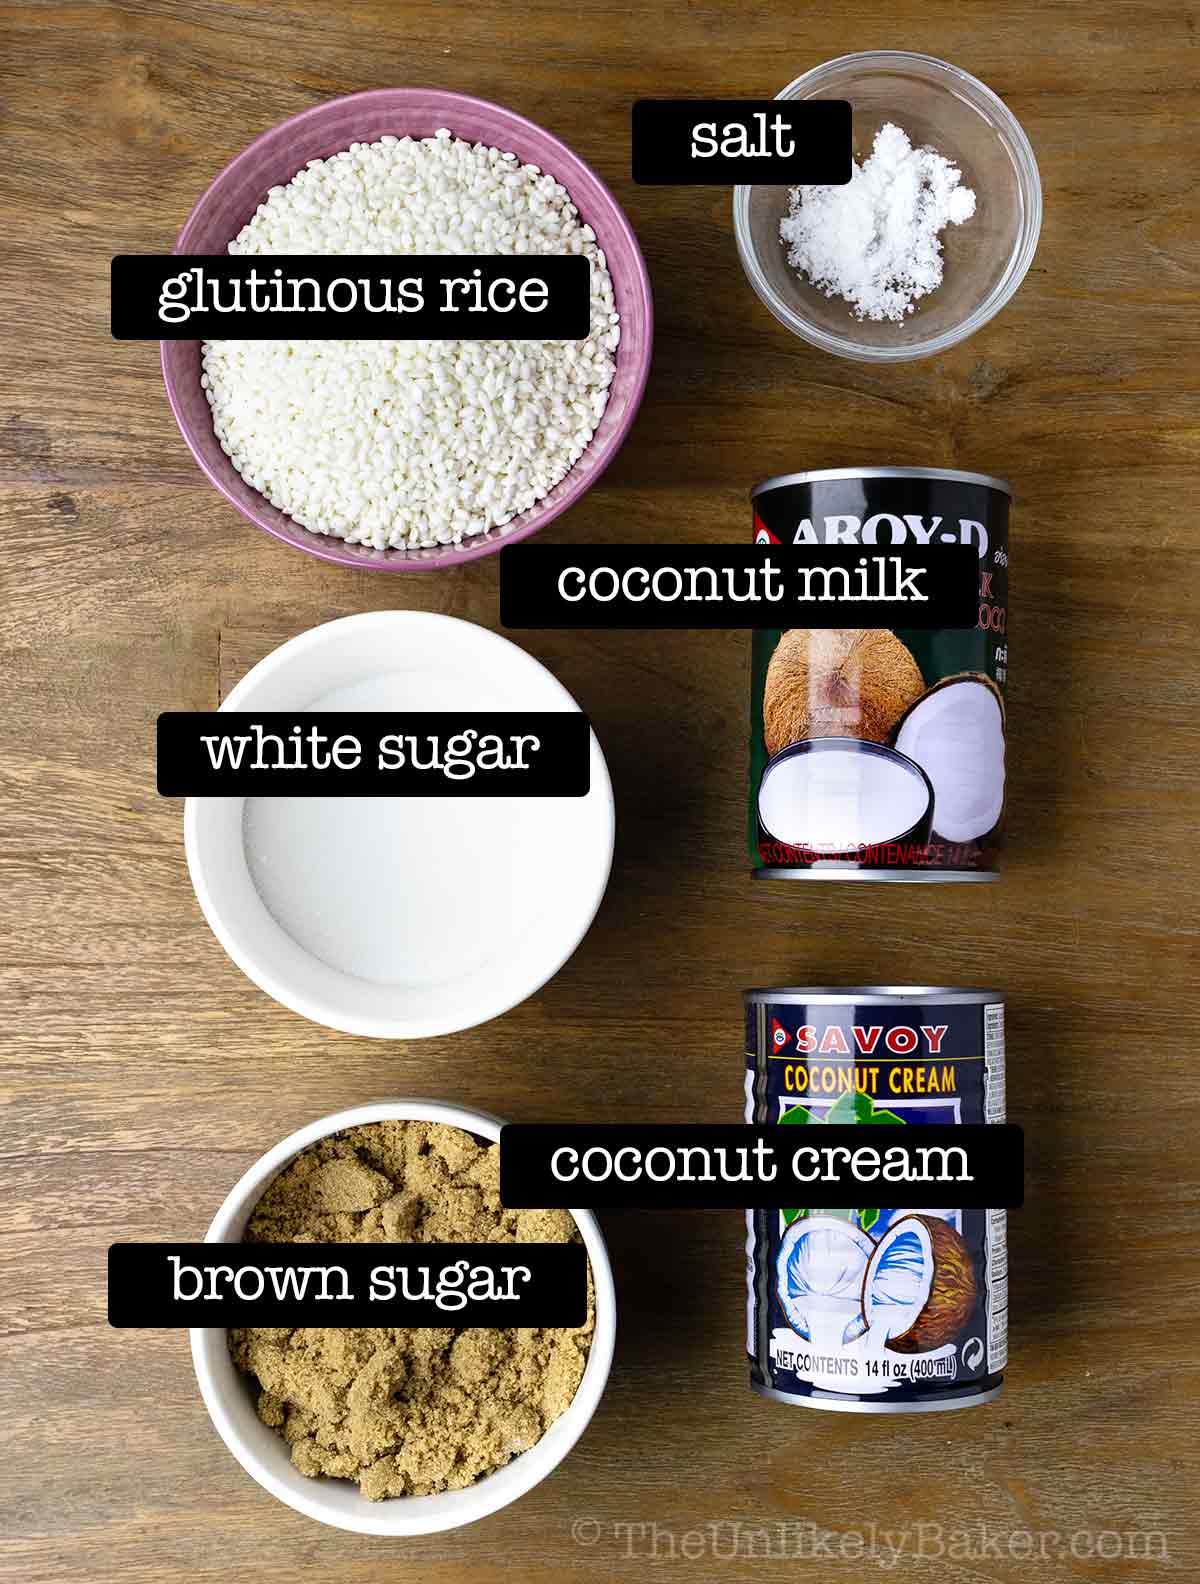 Ingredients for bibingkang malagkit.